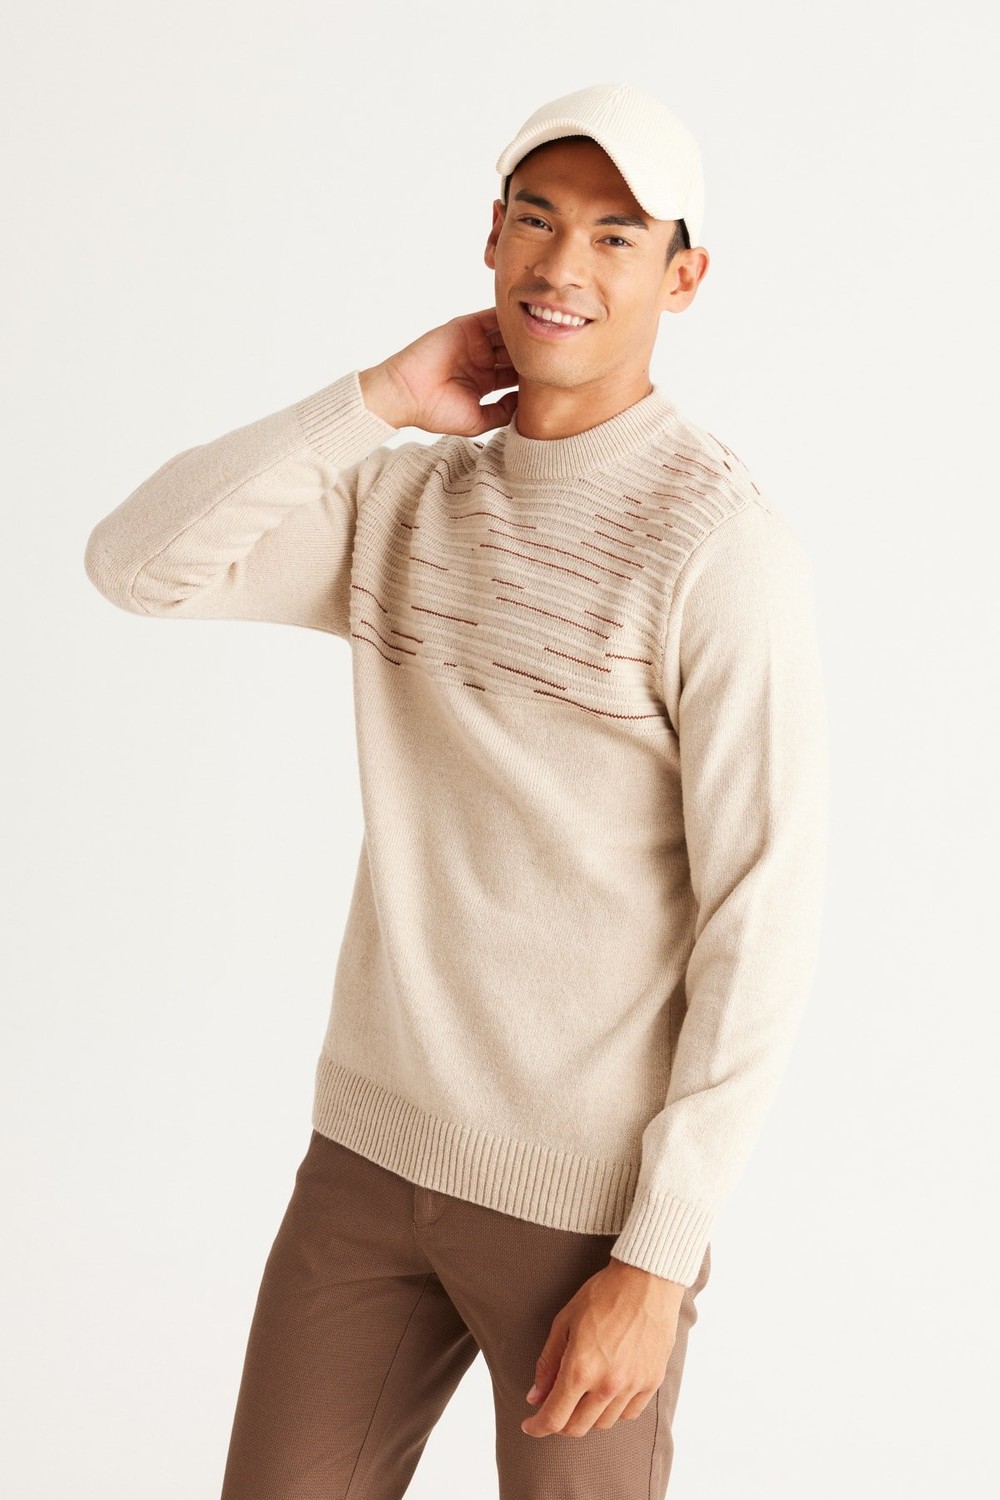 AC&Co / Altınyıldız Classics Men's Beige-tile Standard Fit Normal Cut Half Turtleneck Wool Knitwear Sweater.